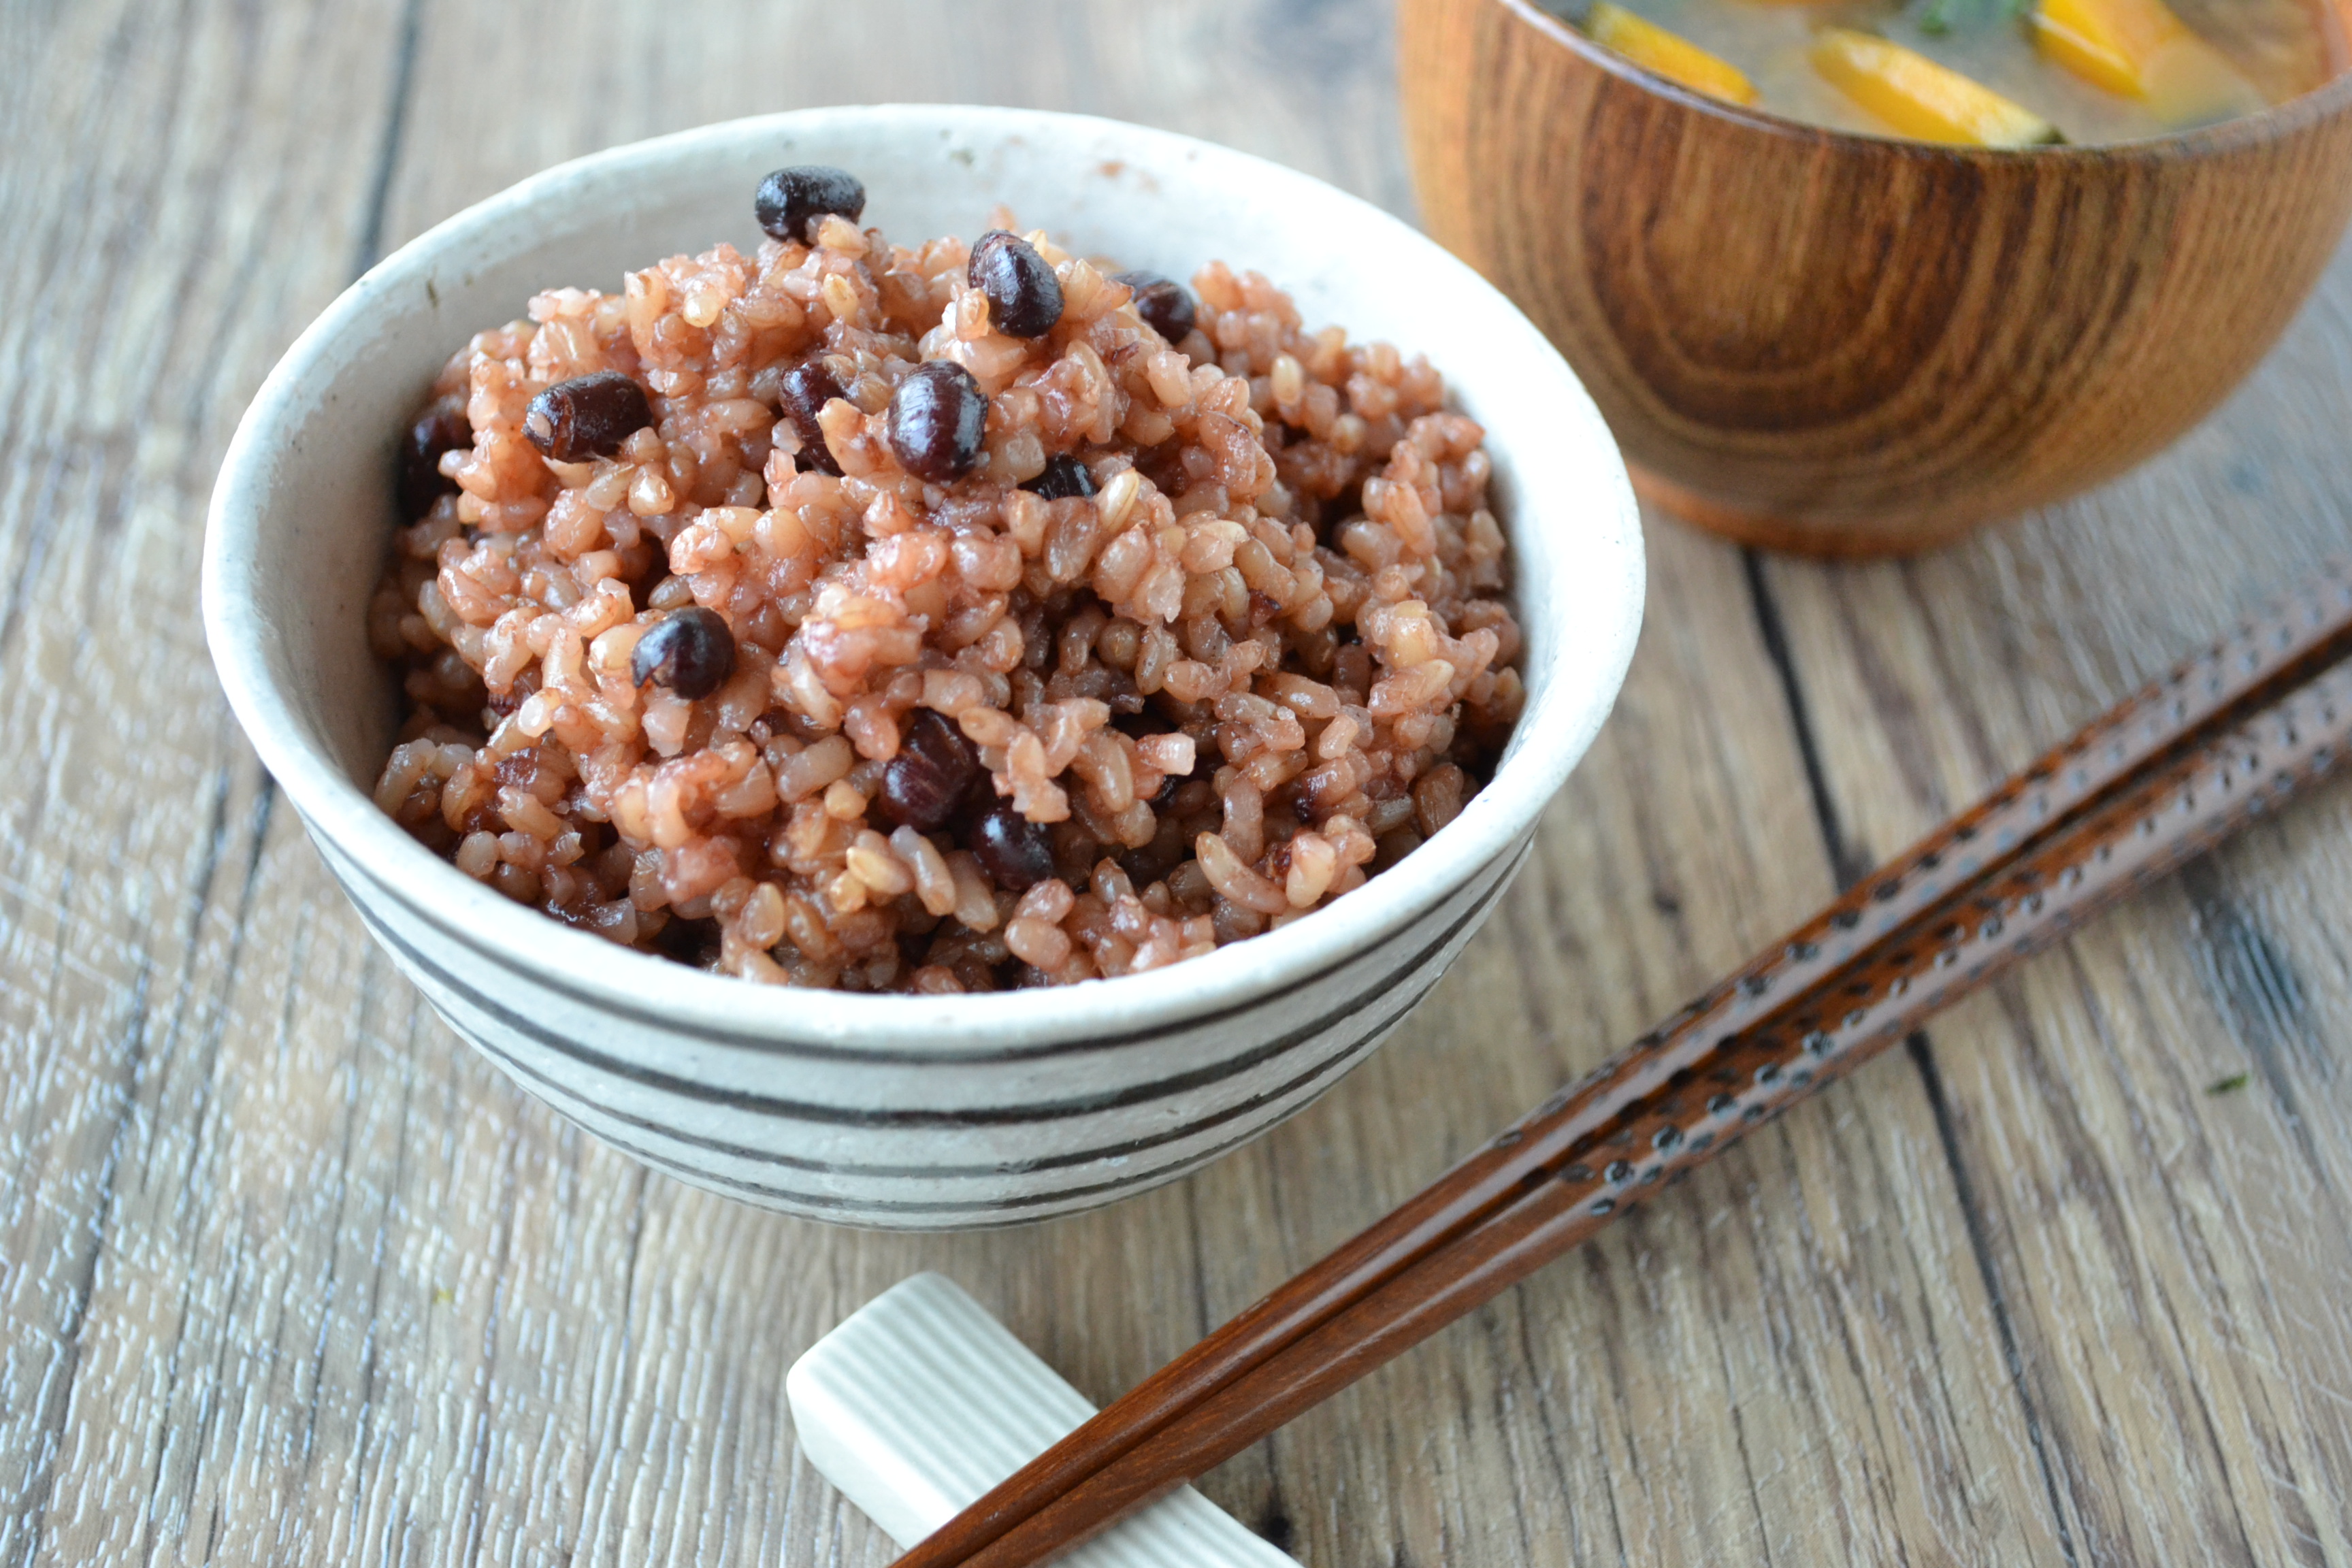 新鮮な発芽玄米・酵素玄米ごはんが食べられる！万能炊飯器「なでしこ 